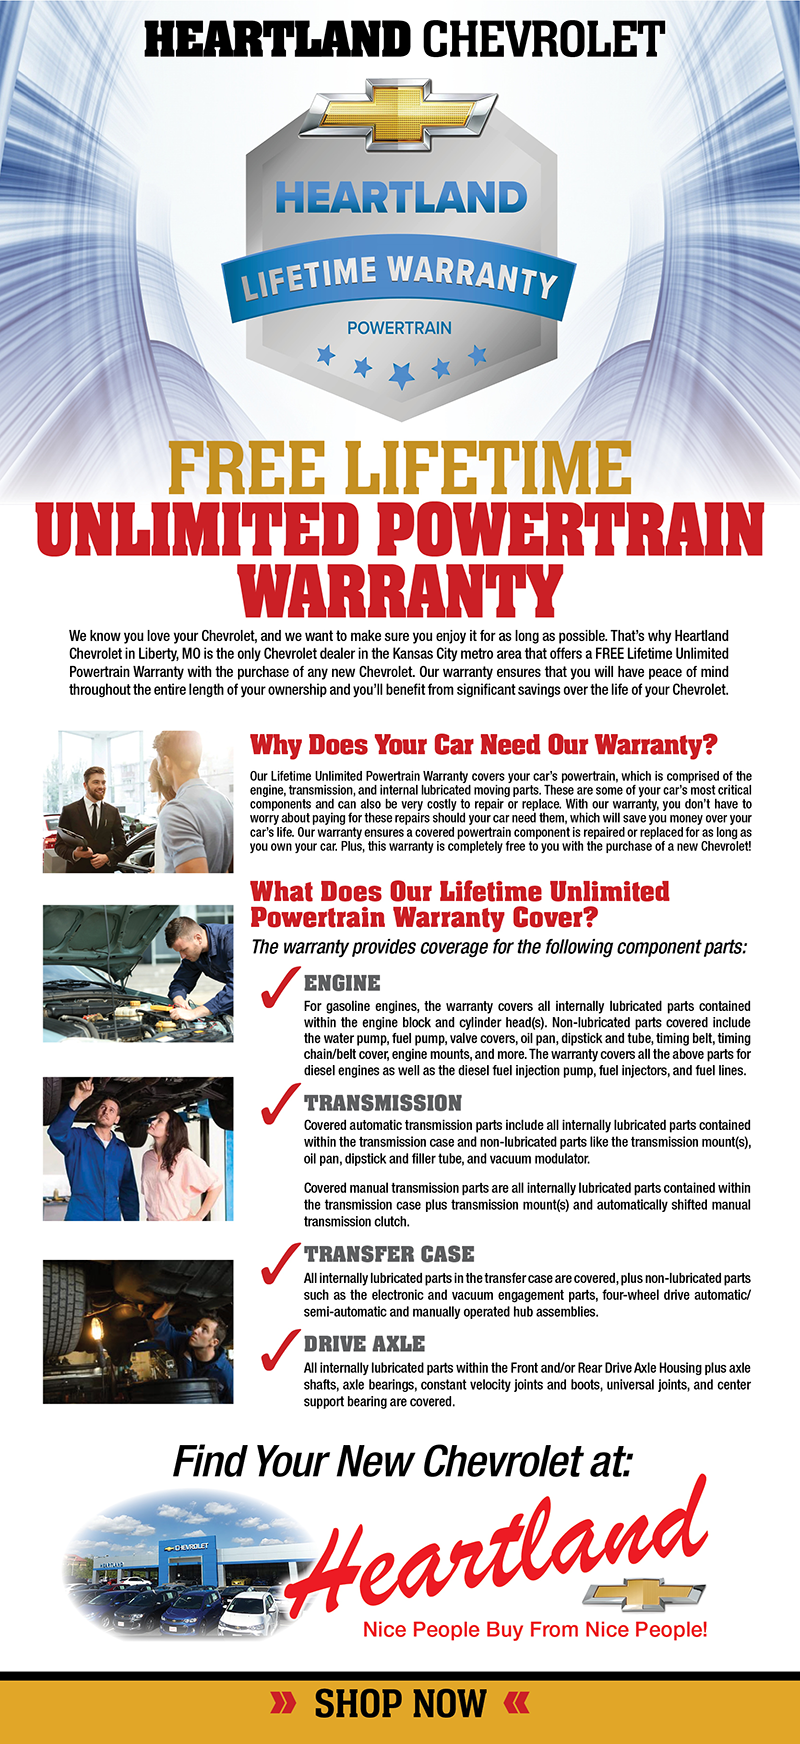 Heartland Chevrolet Free Lifetime Powertrain Warranty